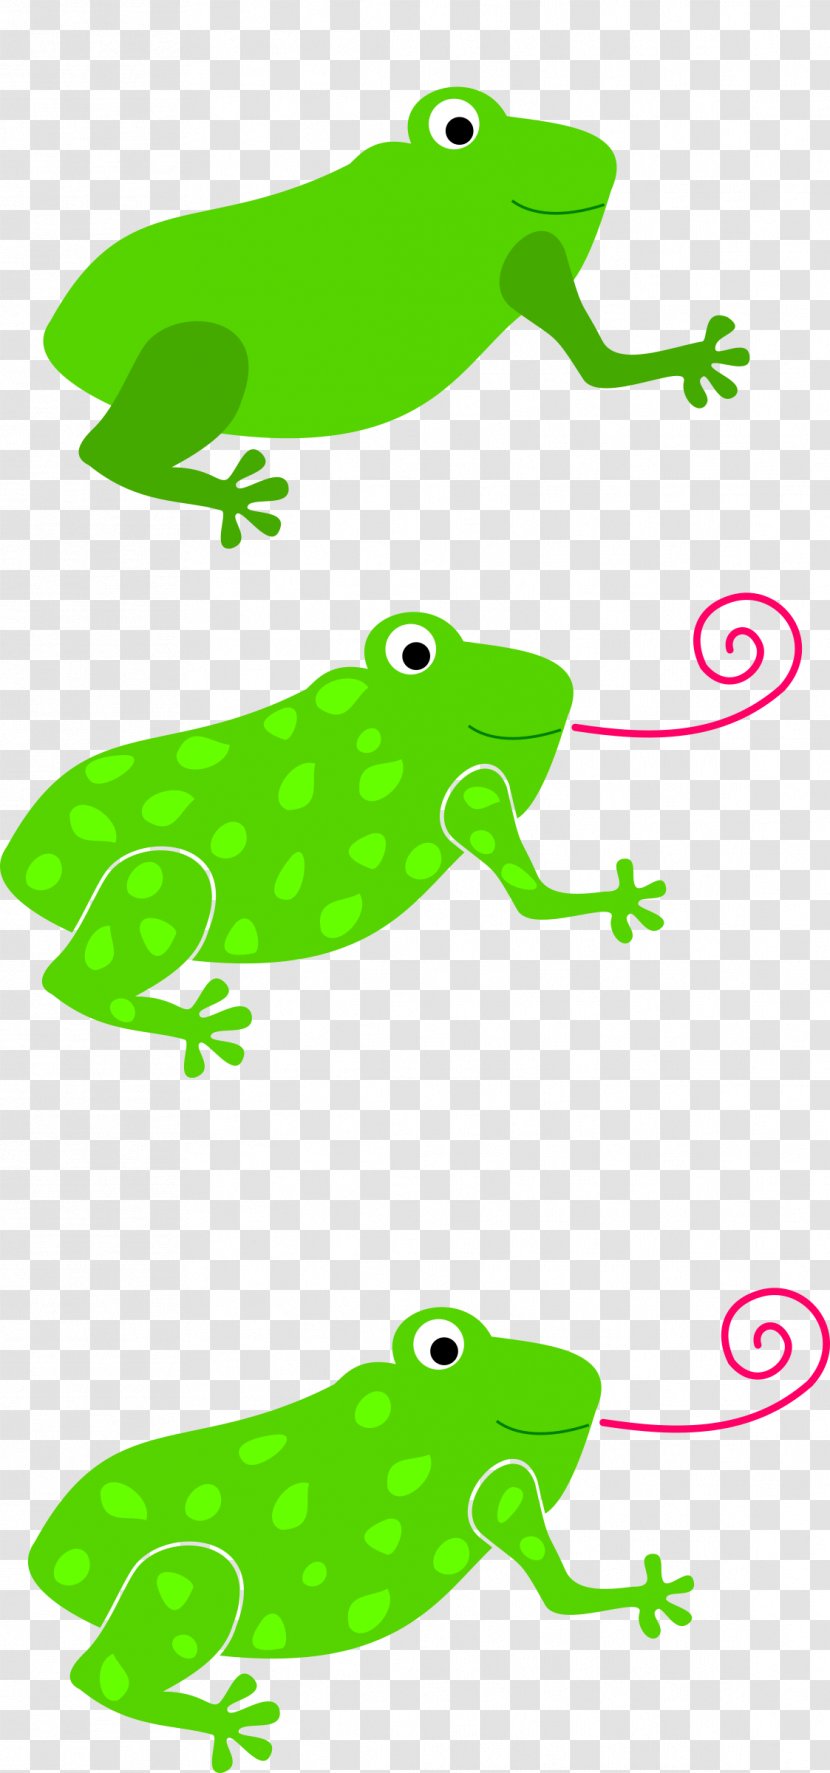 Tree Frog Tongue Toad Clip Art - Green Transparent PNG